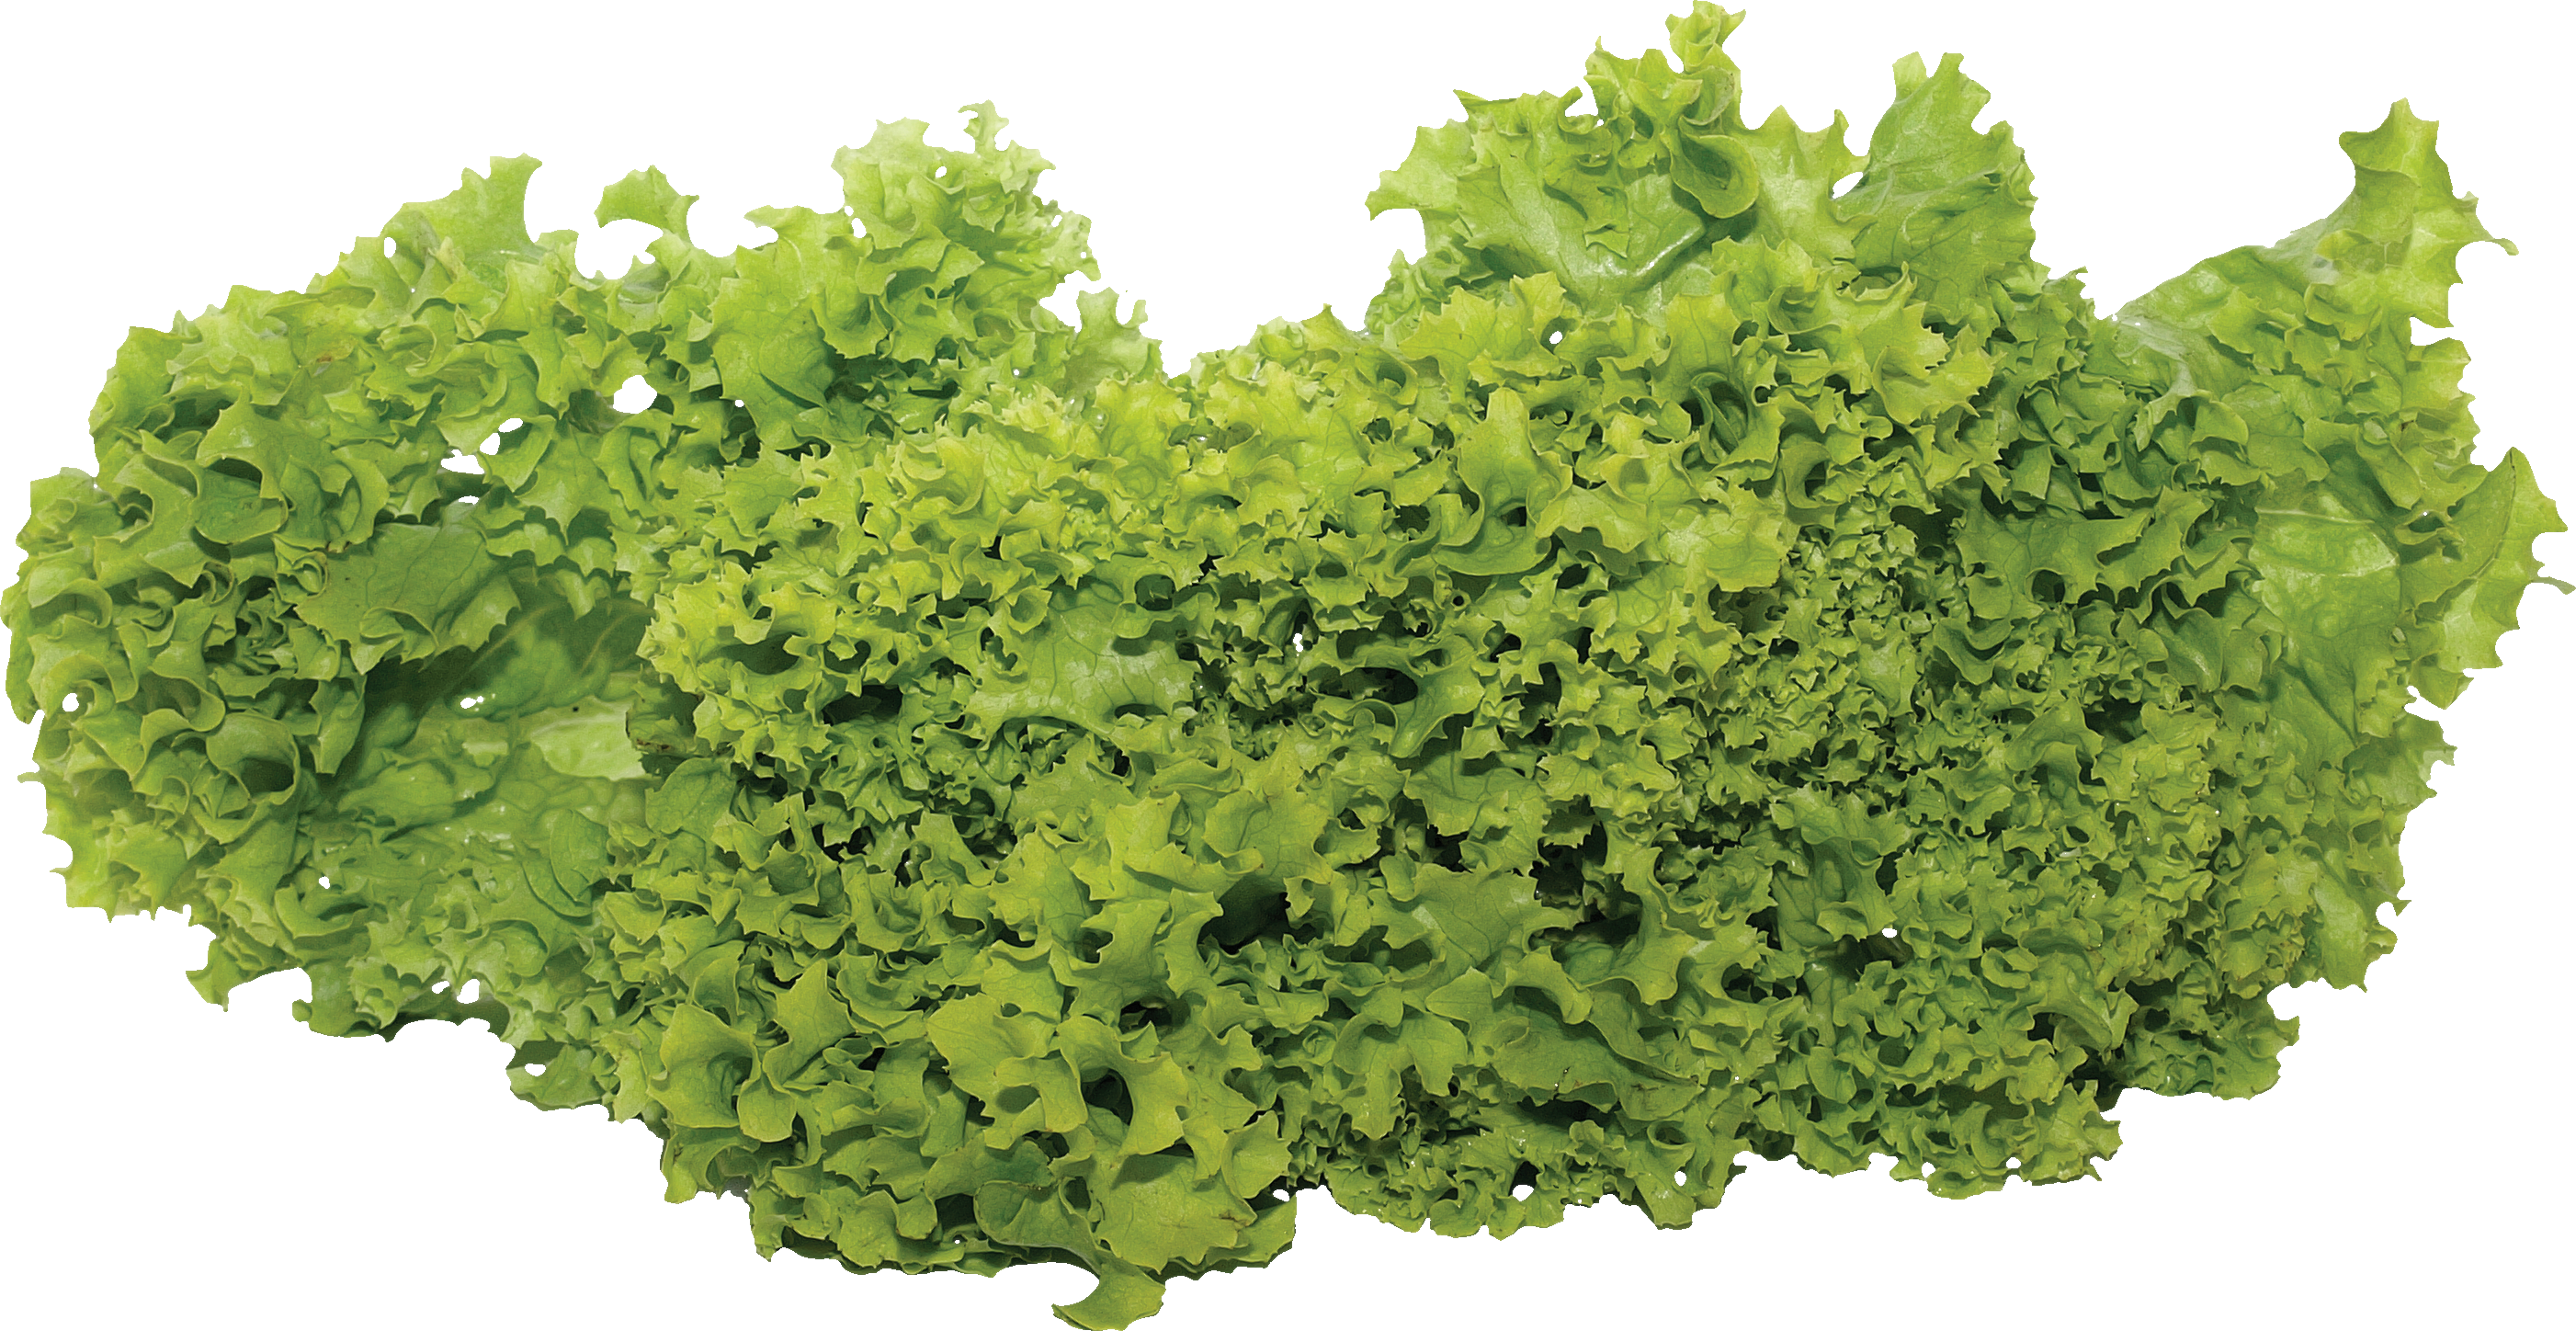 Green salad PNG image